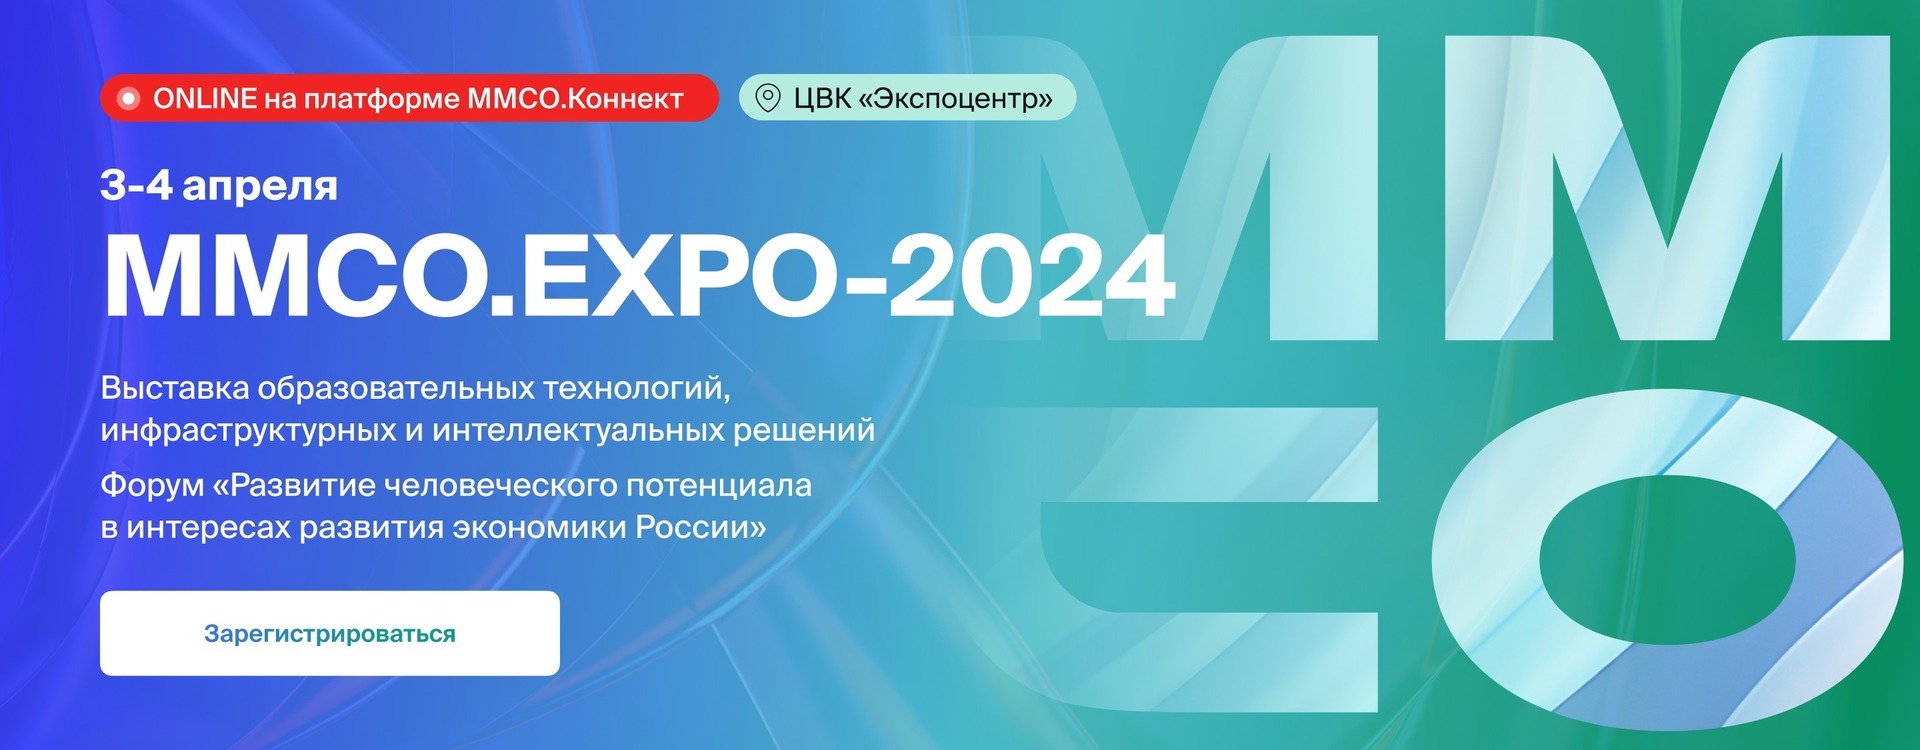 Московский международный Салон образования 2024